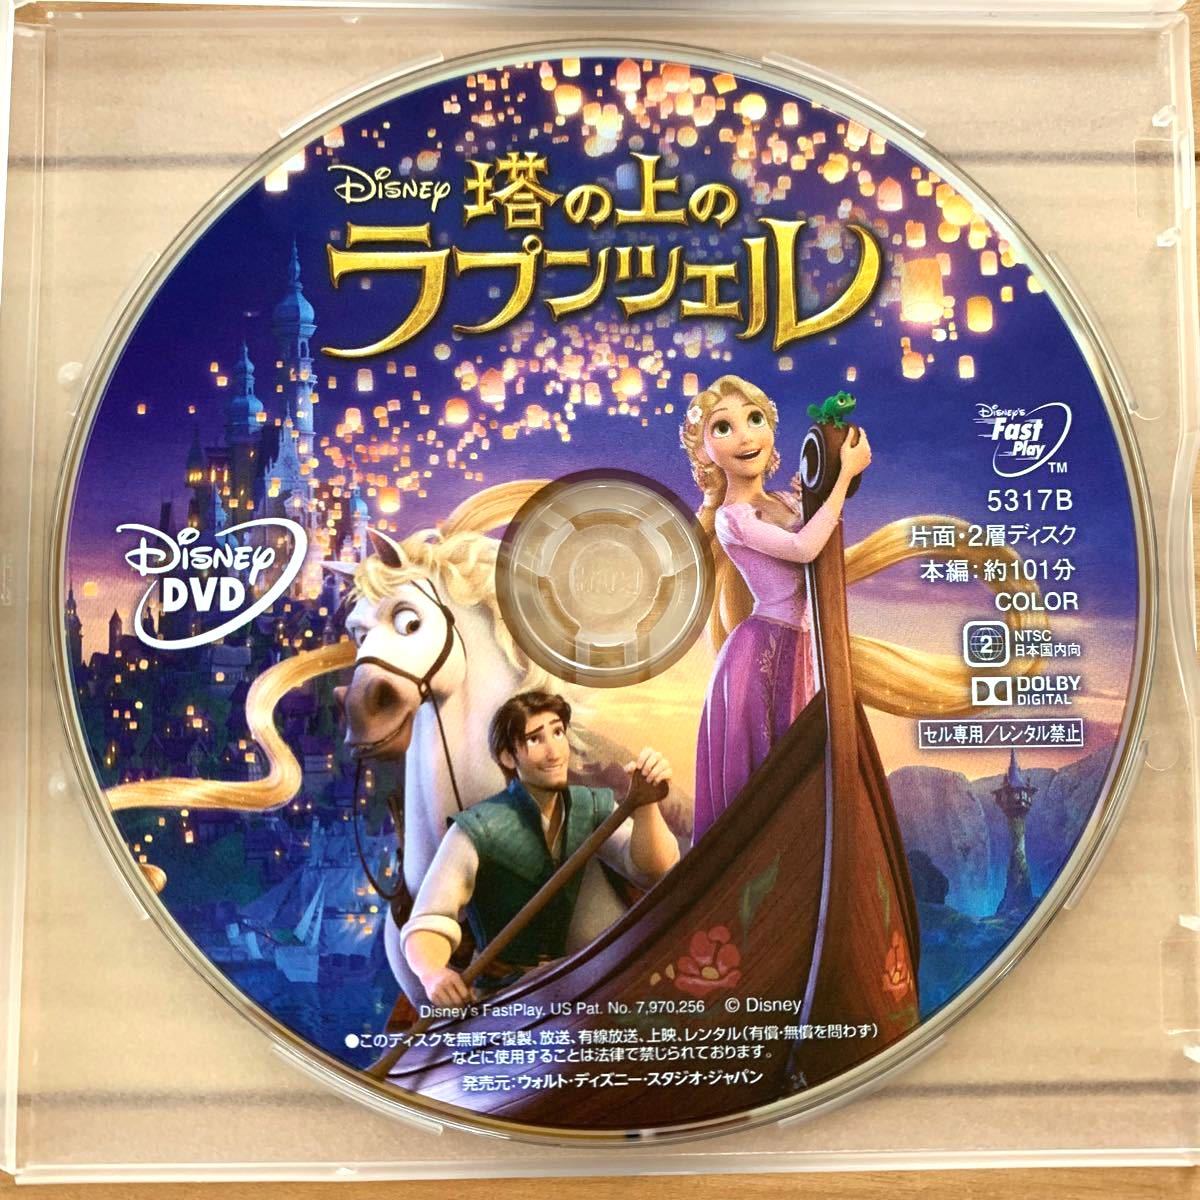 【未使用DVD2枚セット】アナと雪の女王2 & 塔の上のラプンツェル ディズニープリンセス 新品未再生 MOVIENEX